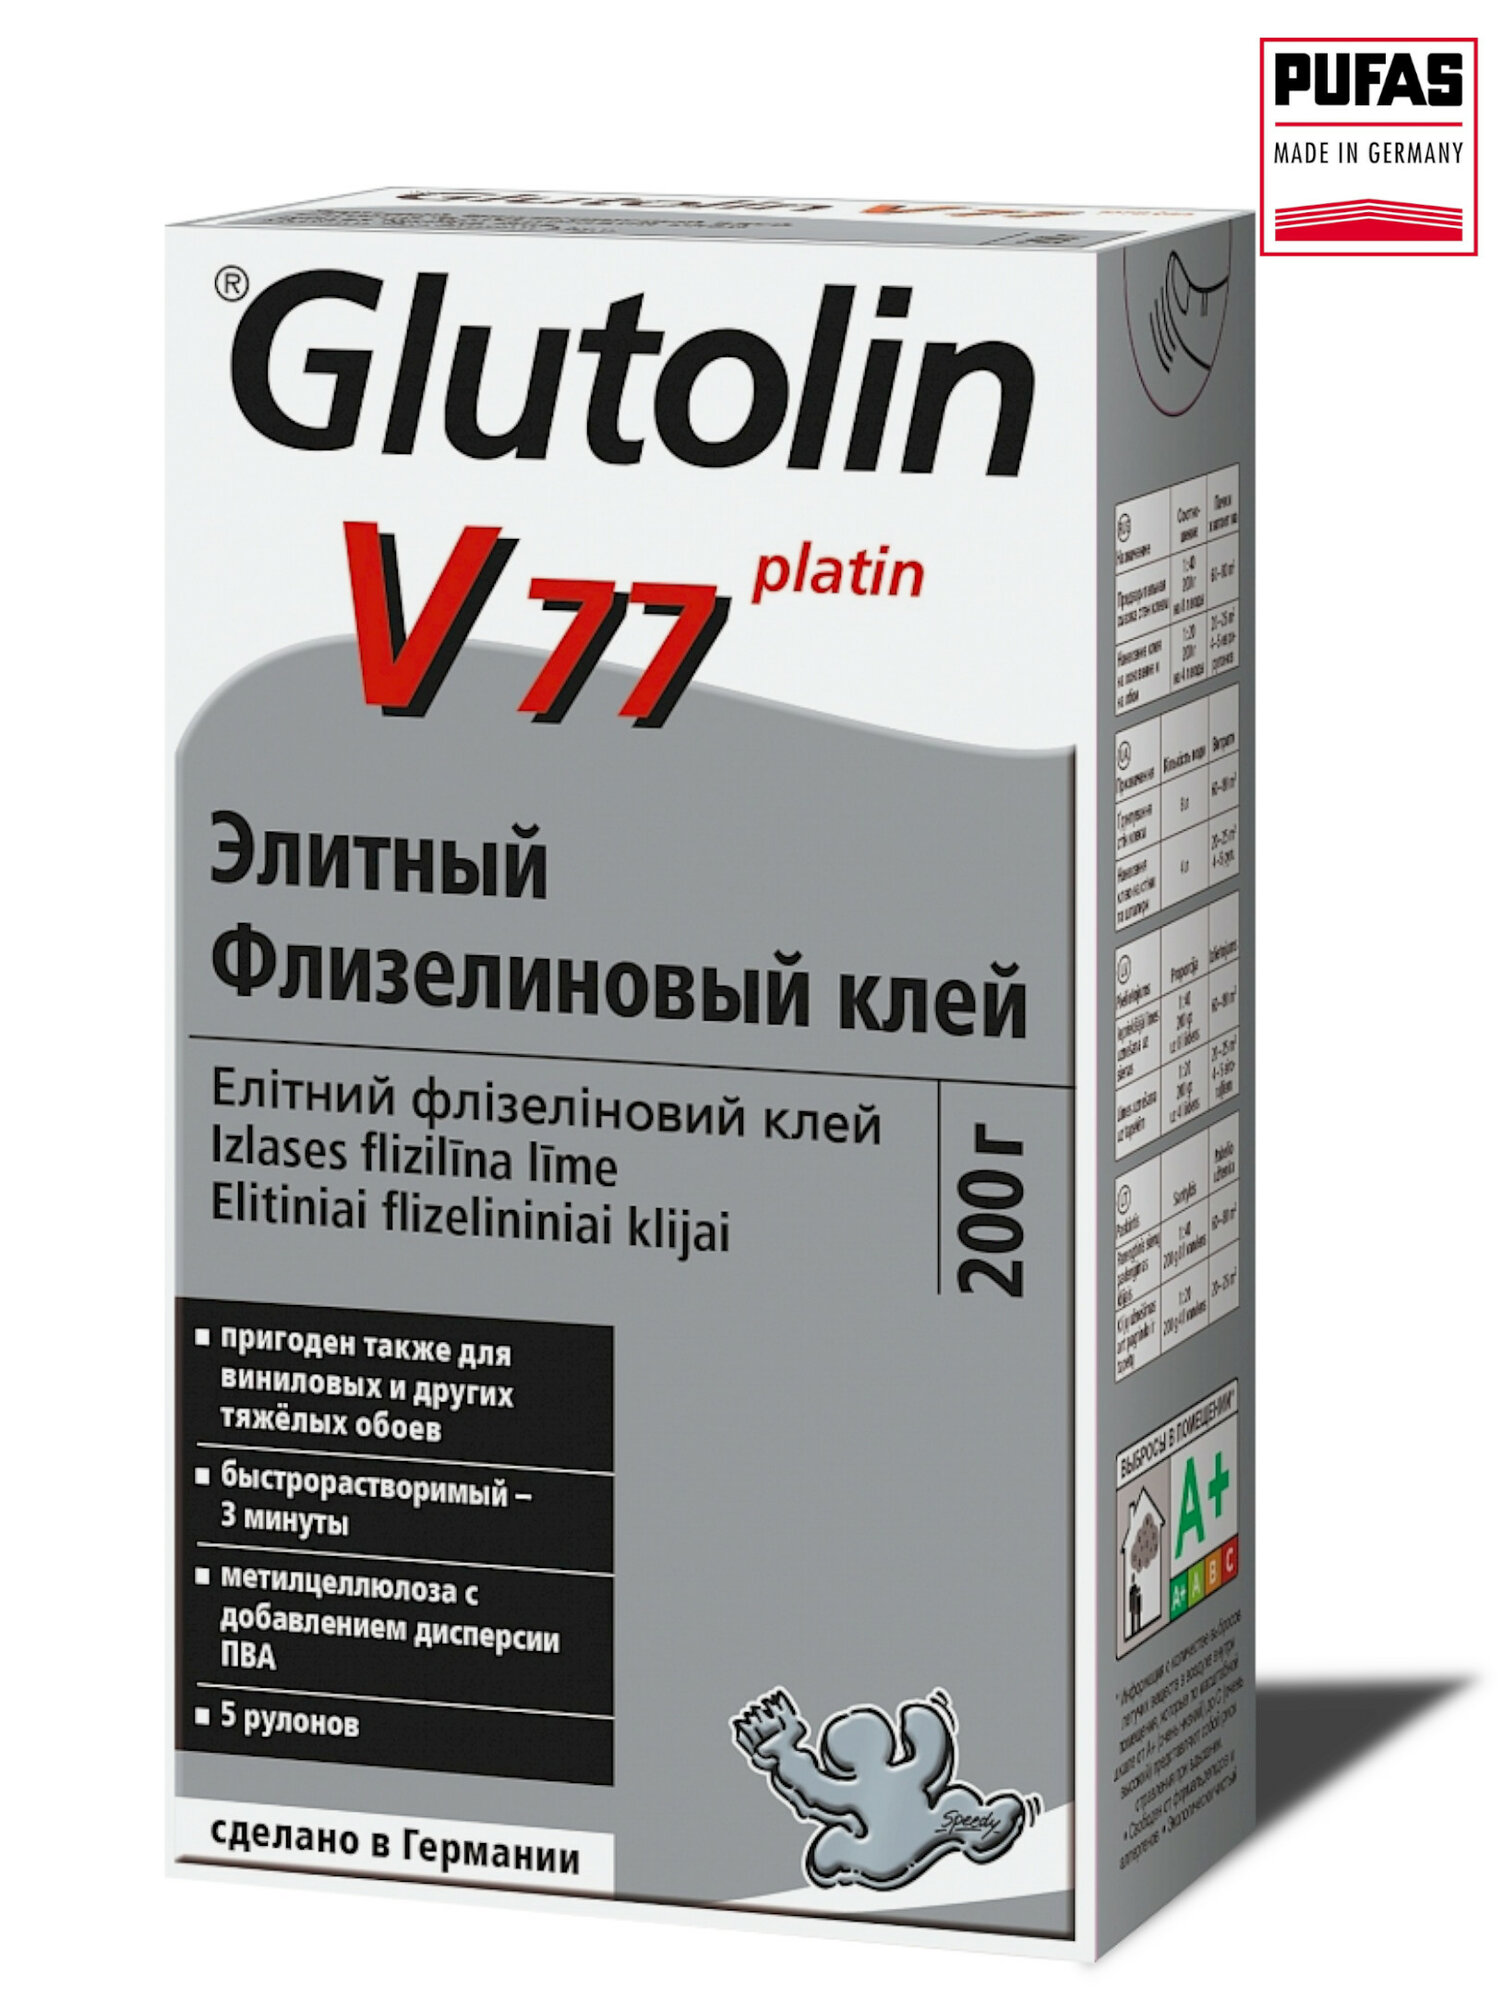 Клей флизелиновый, элитный, Pufas Glutolin V77, 200 г.